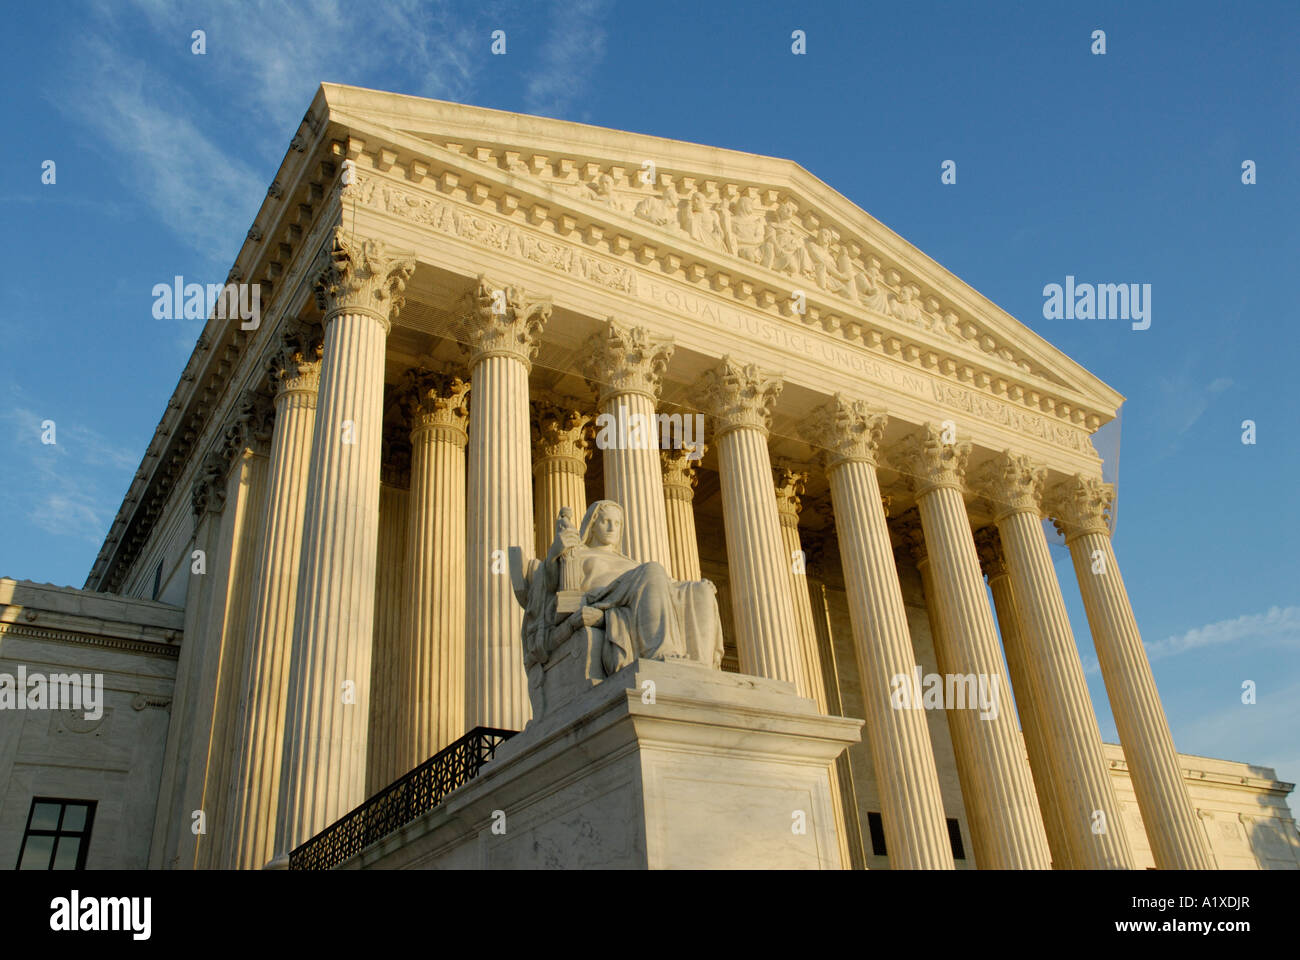 Betrachtung der Gerechtigkeit Statue, United States Supreme Court Gebäude Stockfoto